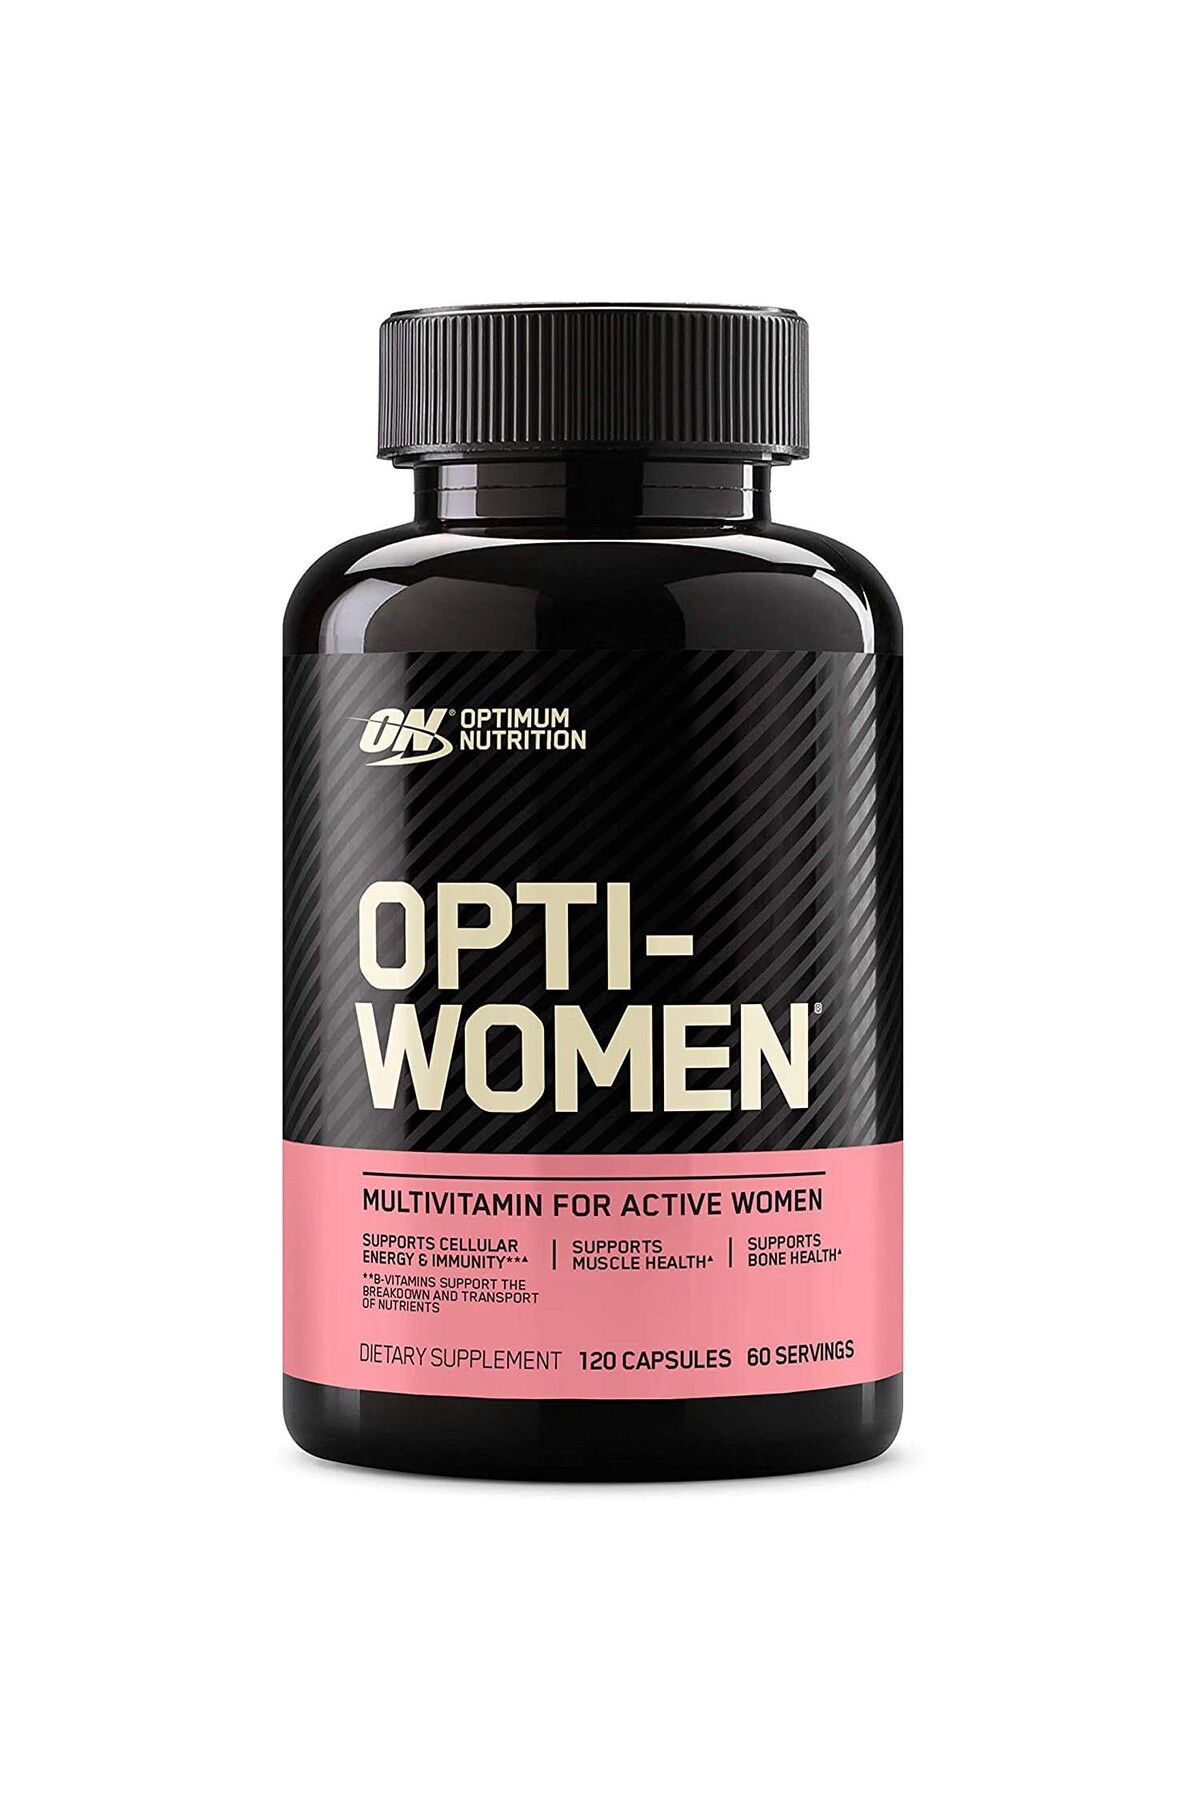 Optimum Nutrition Opti-Women 60 Capsules Multi Vitamin